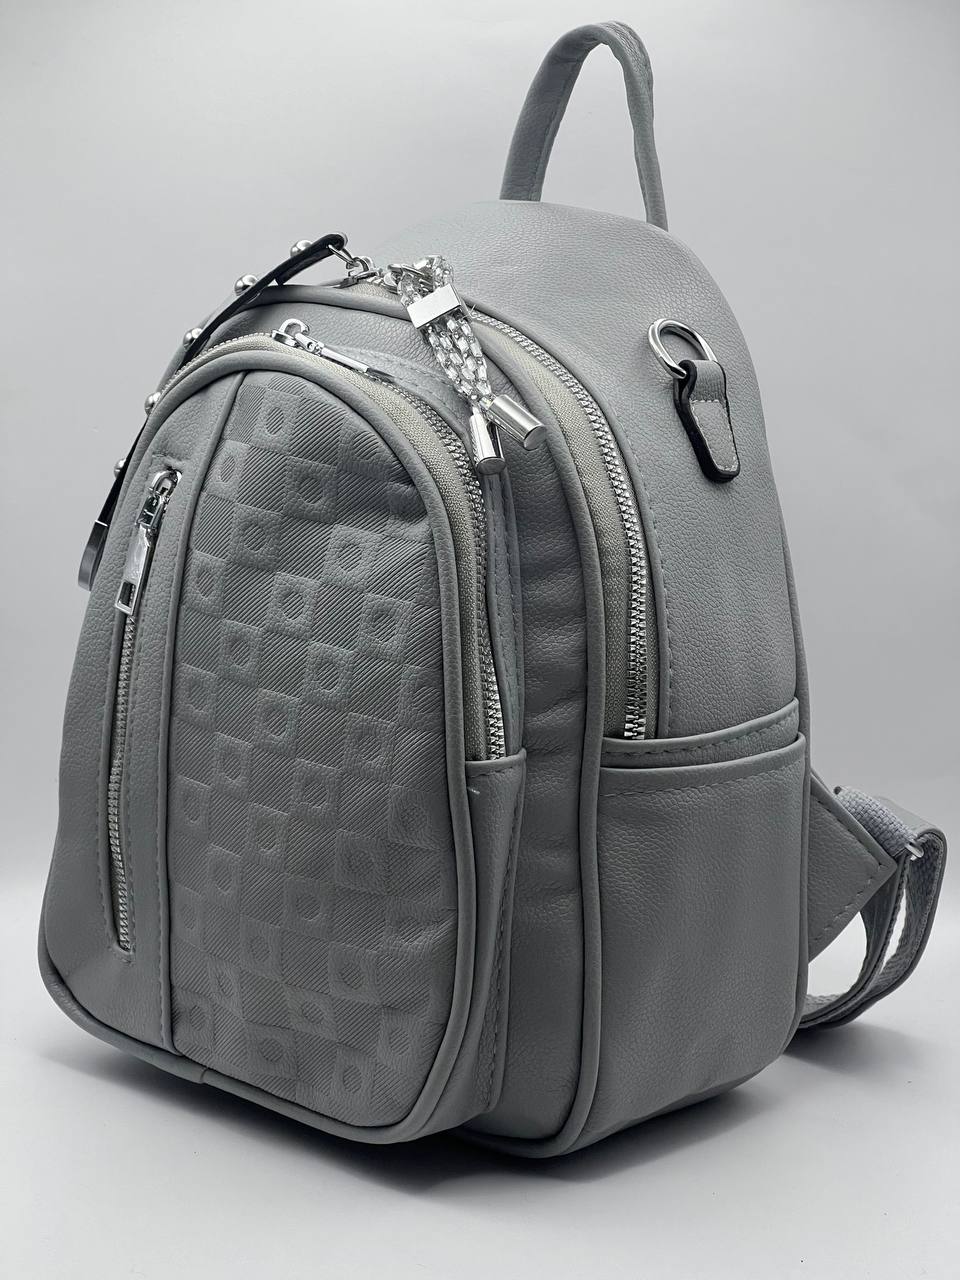 Сумка-рюкзак женская SunGold Р-92001 серая, 27х22х12 см